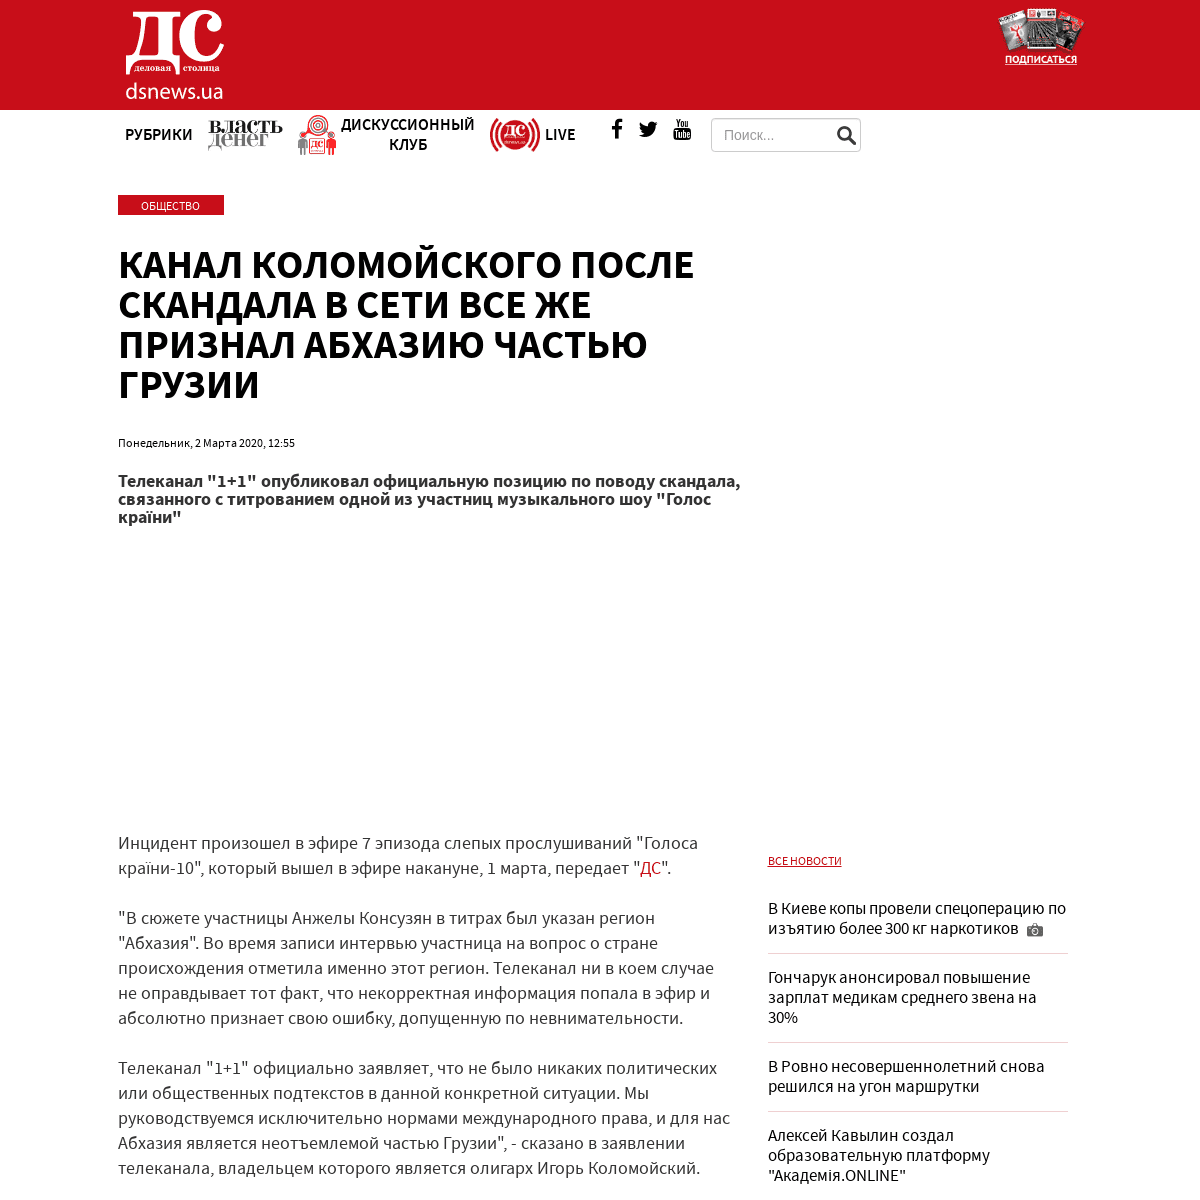 A complete backup of www.dsnews.ua/society/kanal-kolomoyskogo-posle-skandala-v-seti-vse-zhe-priznal-02032020125500